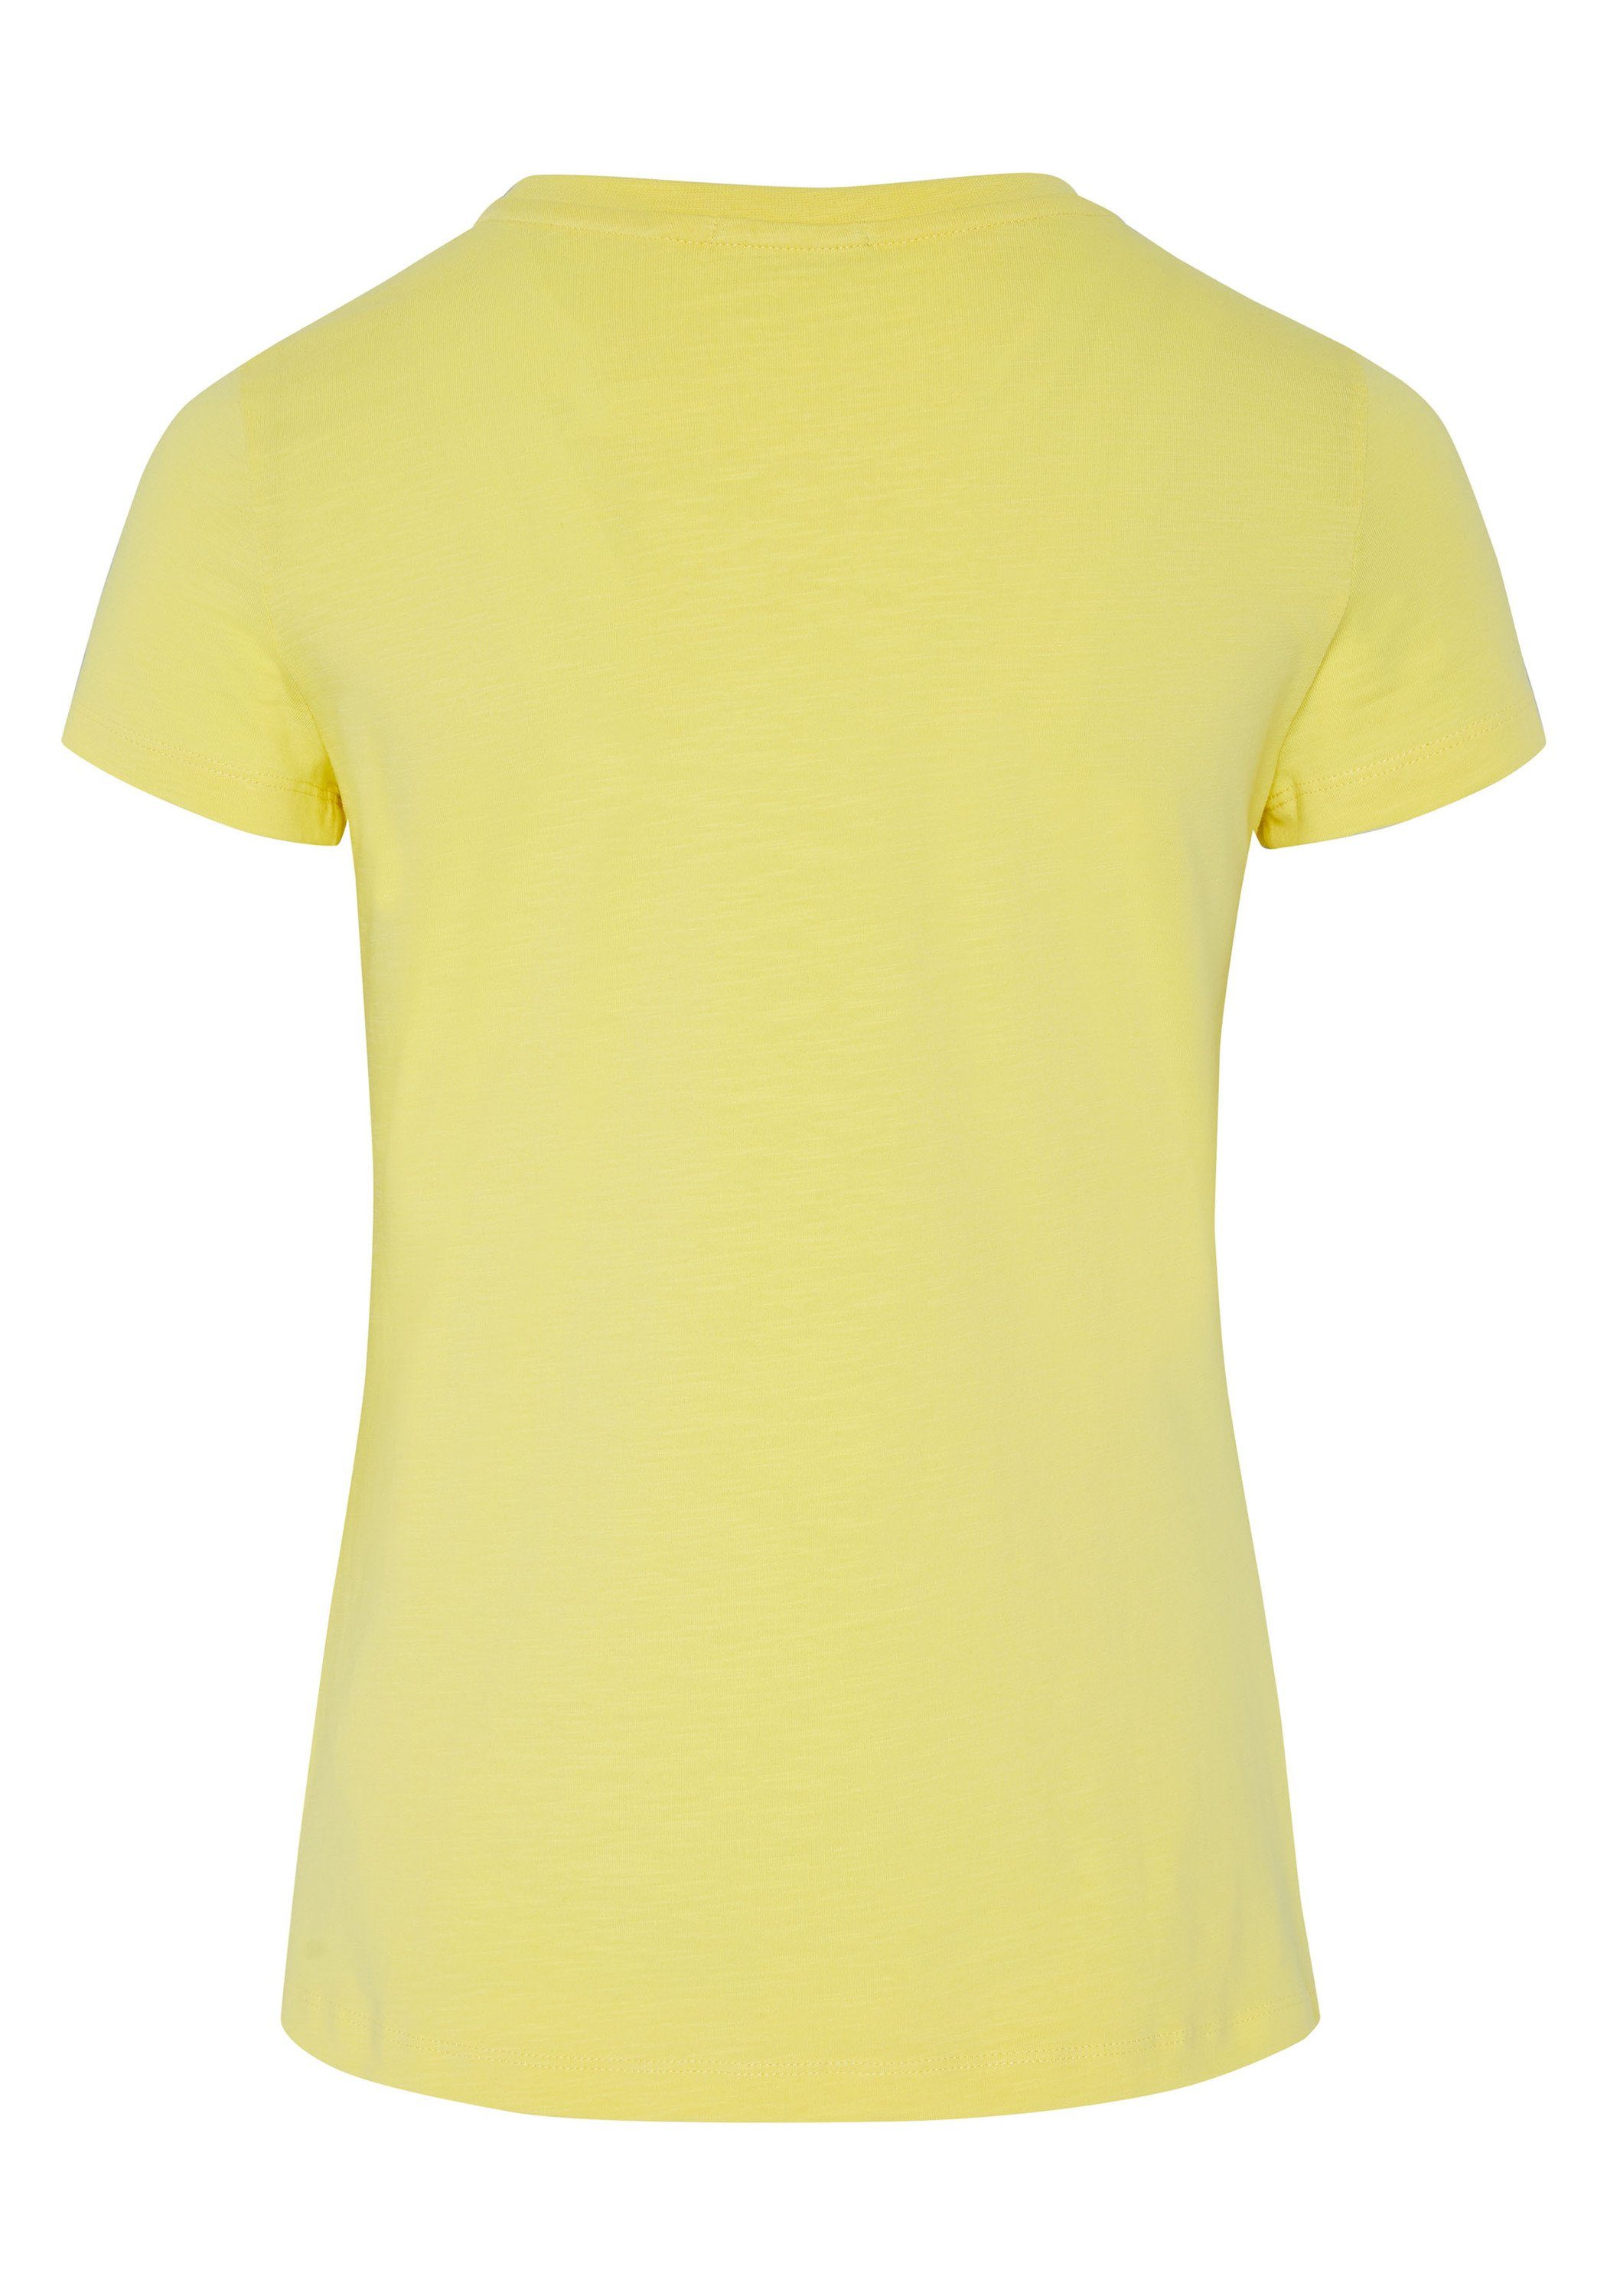 Chiemsee Print-Shirt T-Shirt 1 Jumper-Frontprint mit Limelight